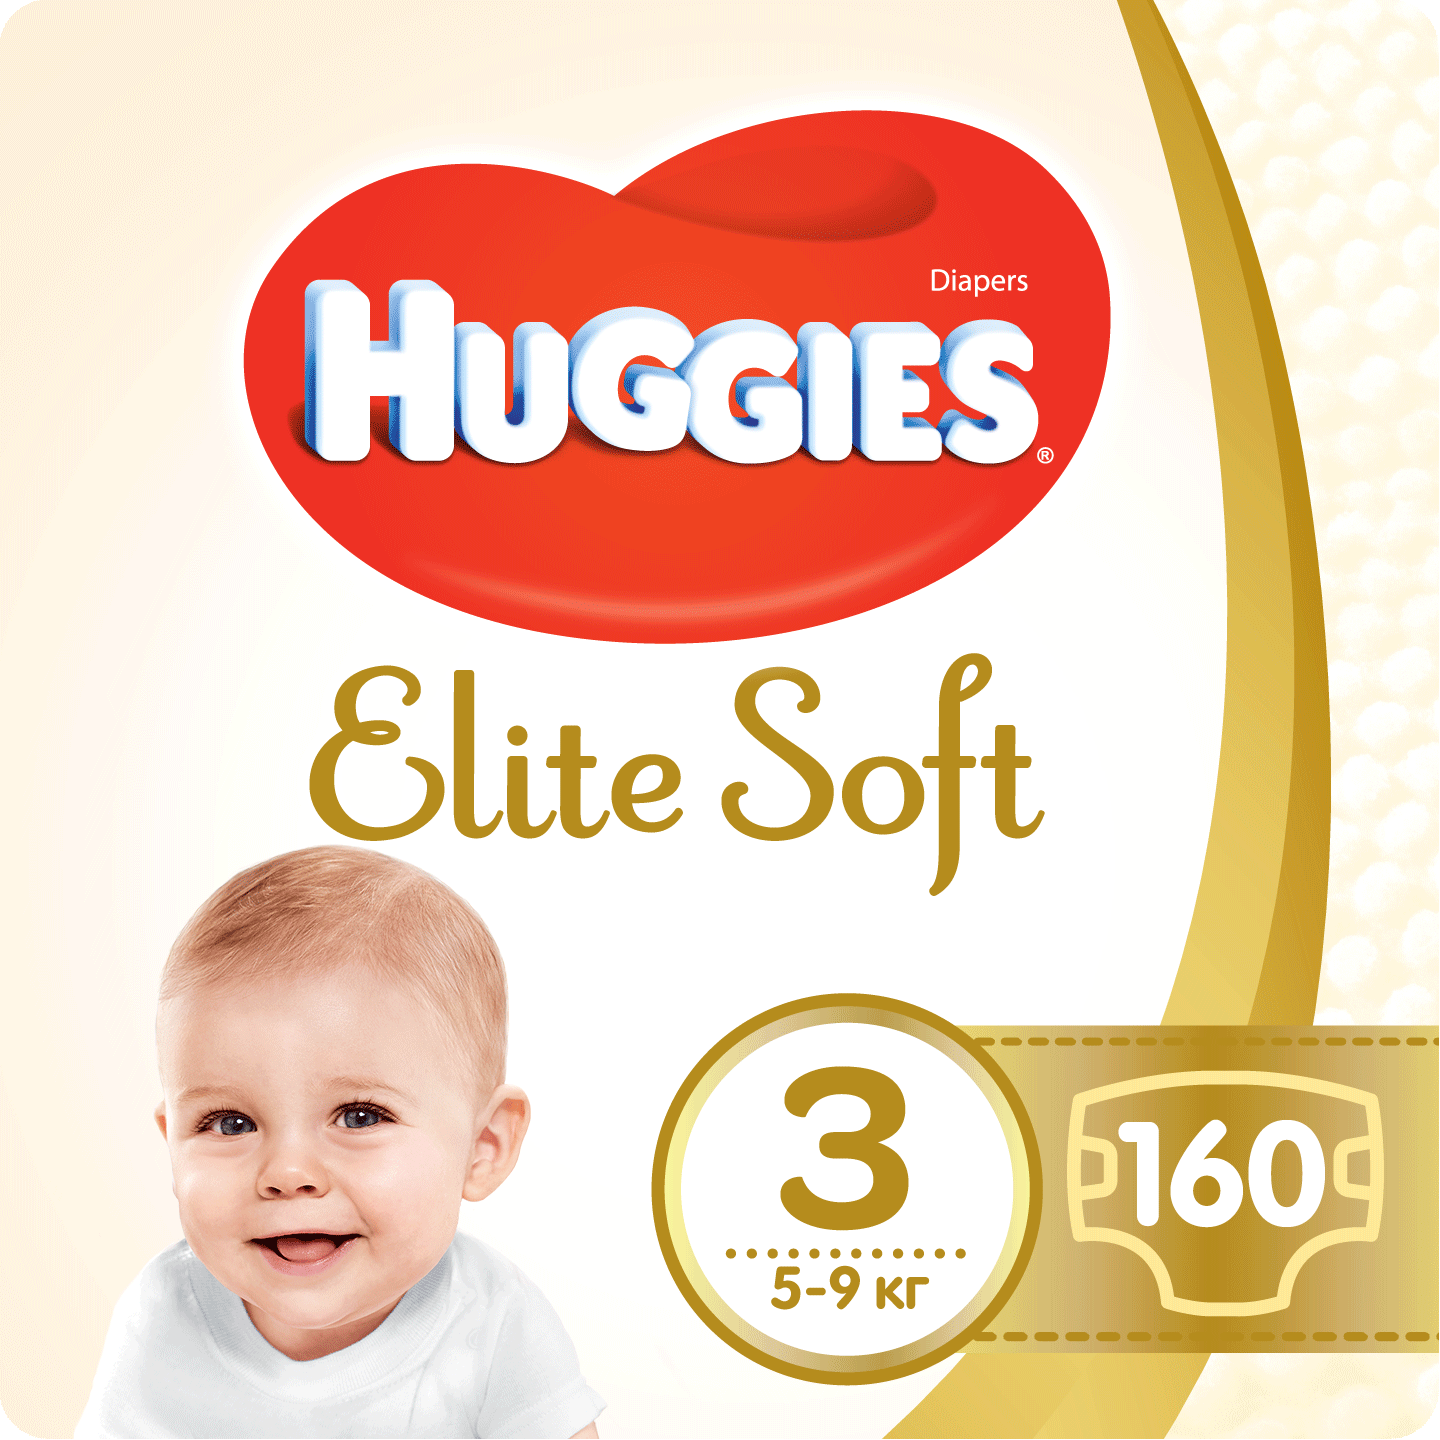 Набор подгузников Huggies Elite Soft 3 (5-9 кг), 160 шт. (2 уп. по 80 шт.) - фото 1